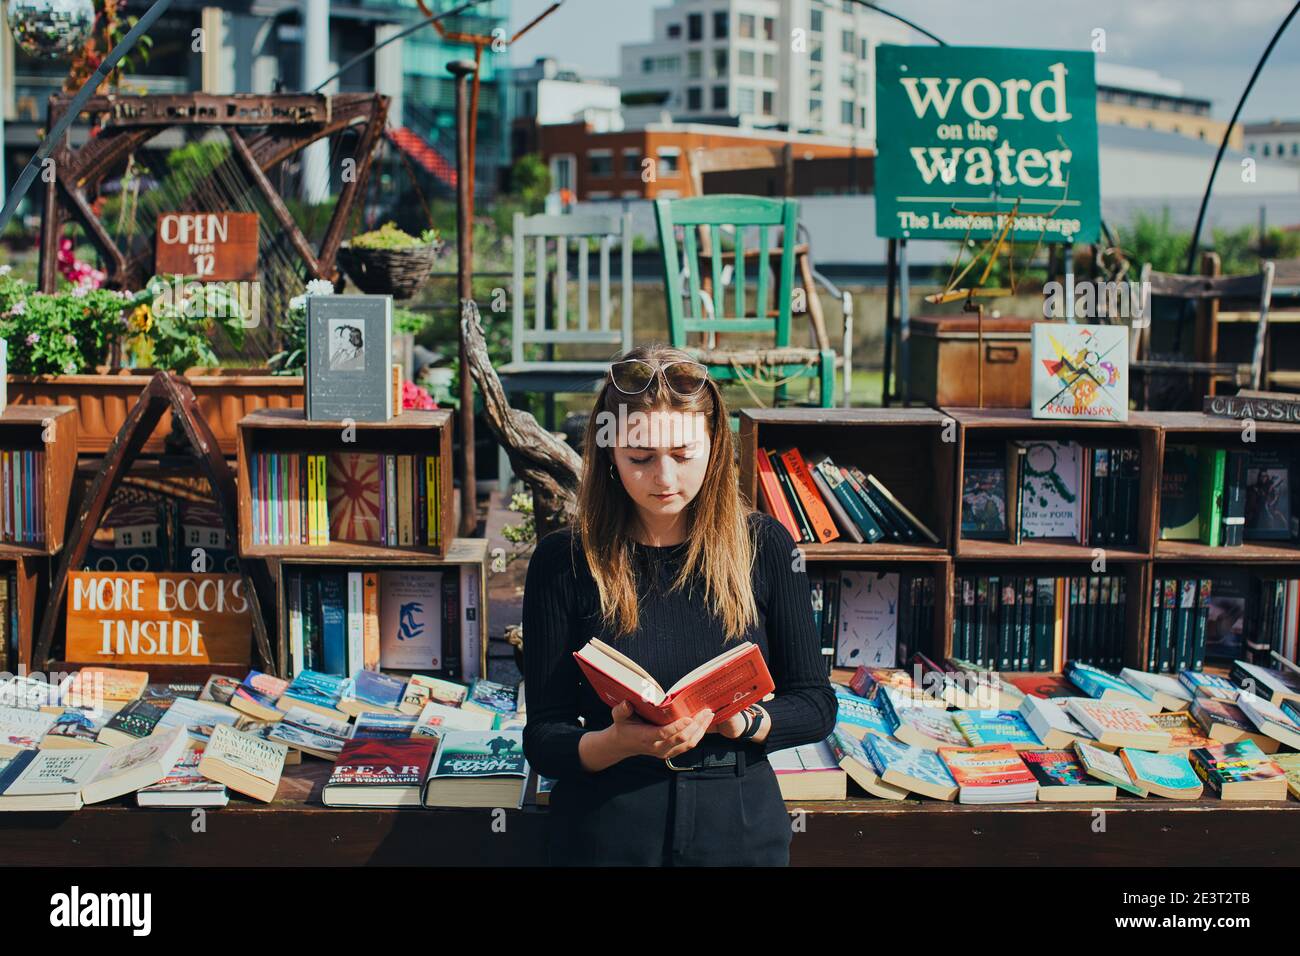 GREAT BRITAN / Londres / librairies / Woman est en train de lire un livre en fron of Word on the Water London Canalboat Bookstore . Banque D'Images